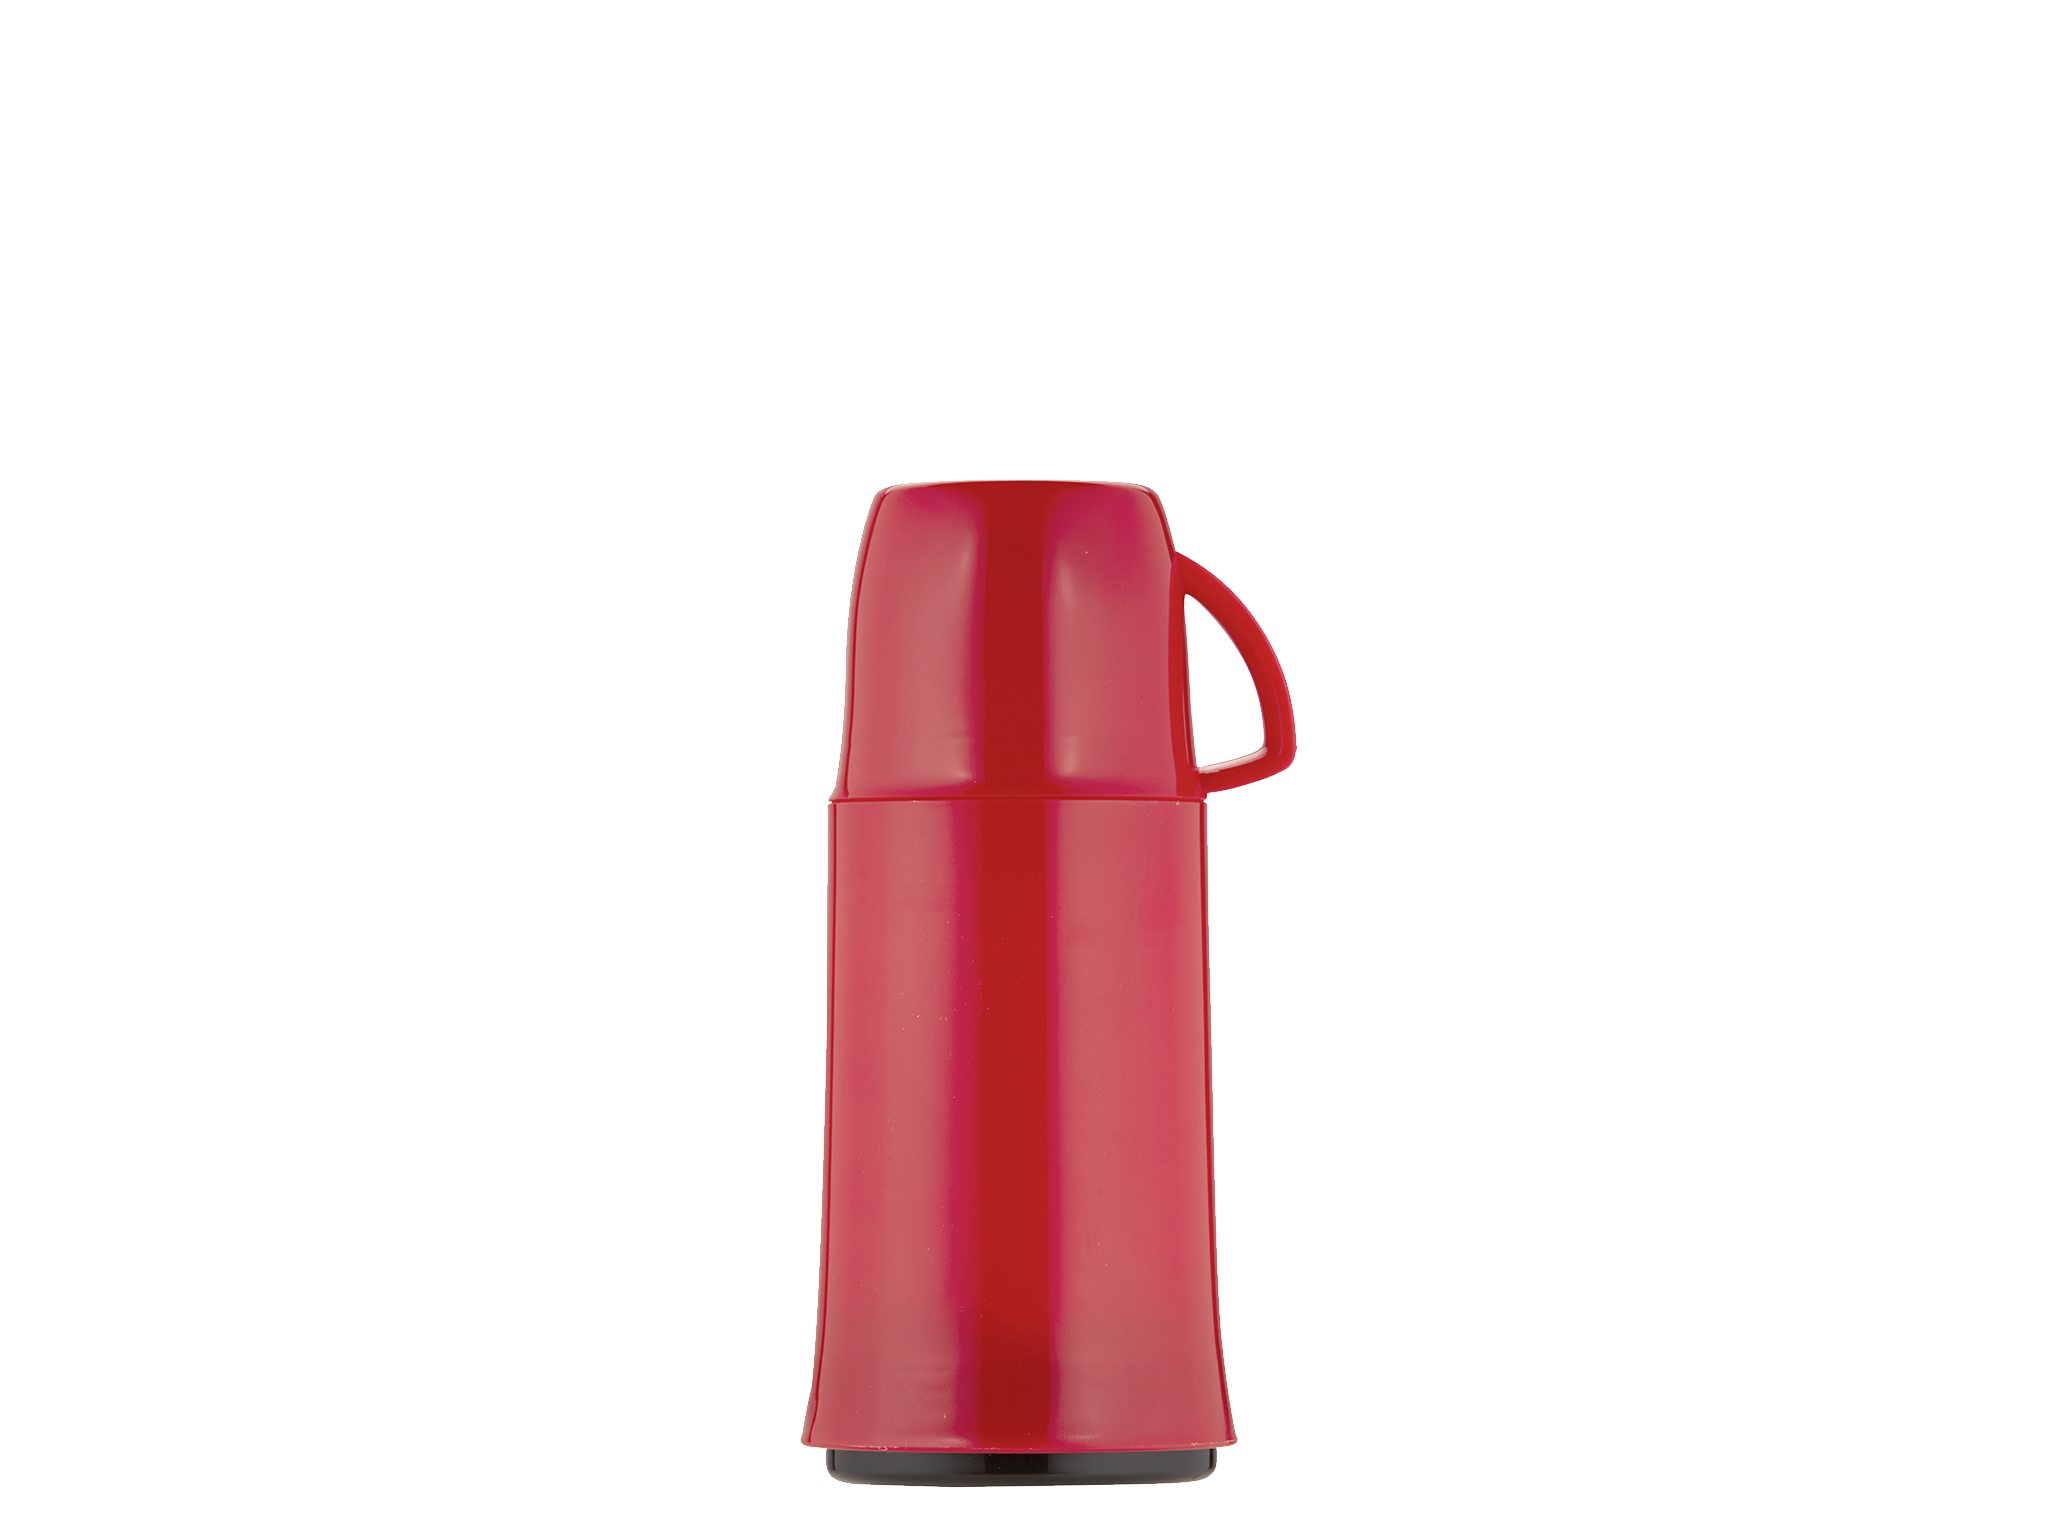 5441-011 - Vacuum flask red 0.25 L ELEGANCE - Helios